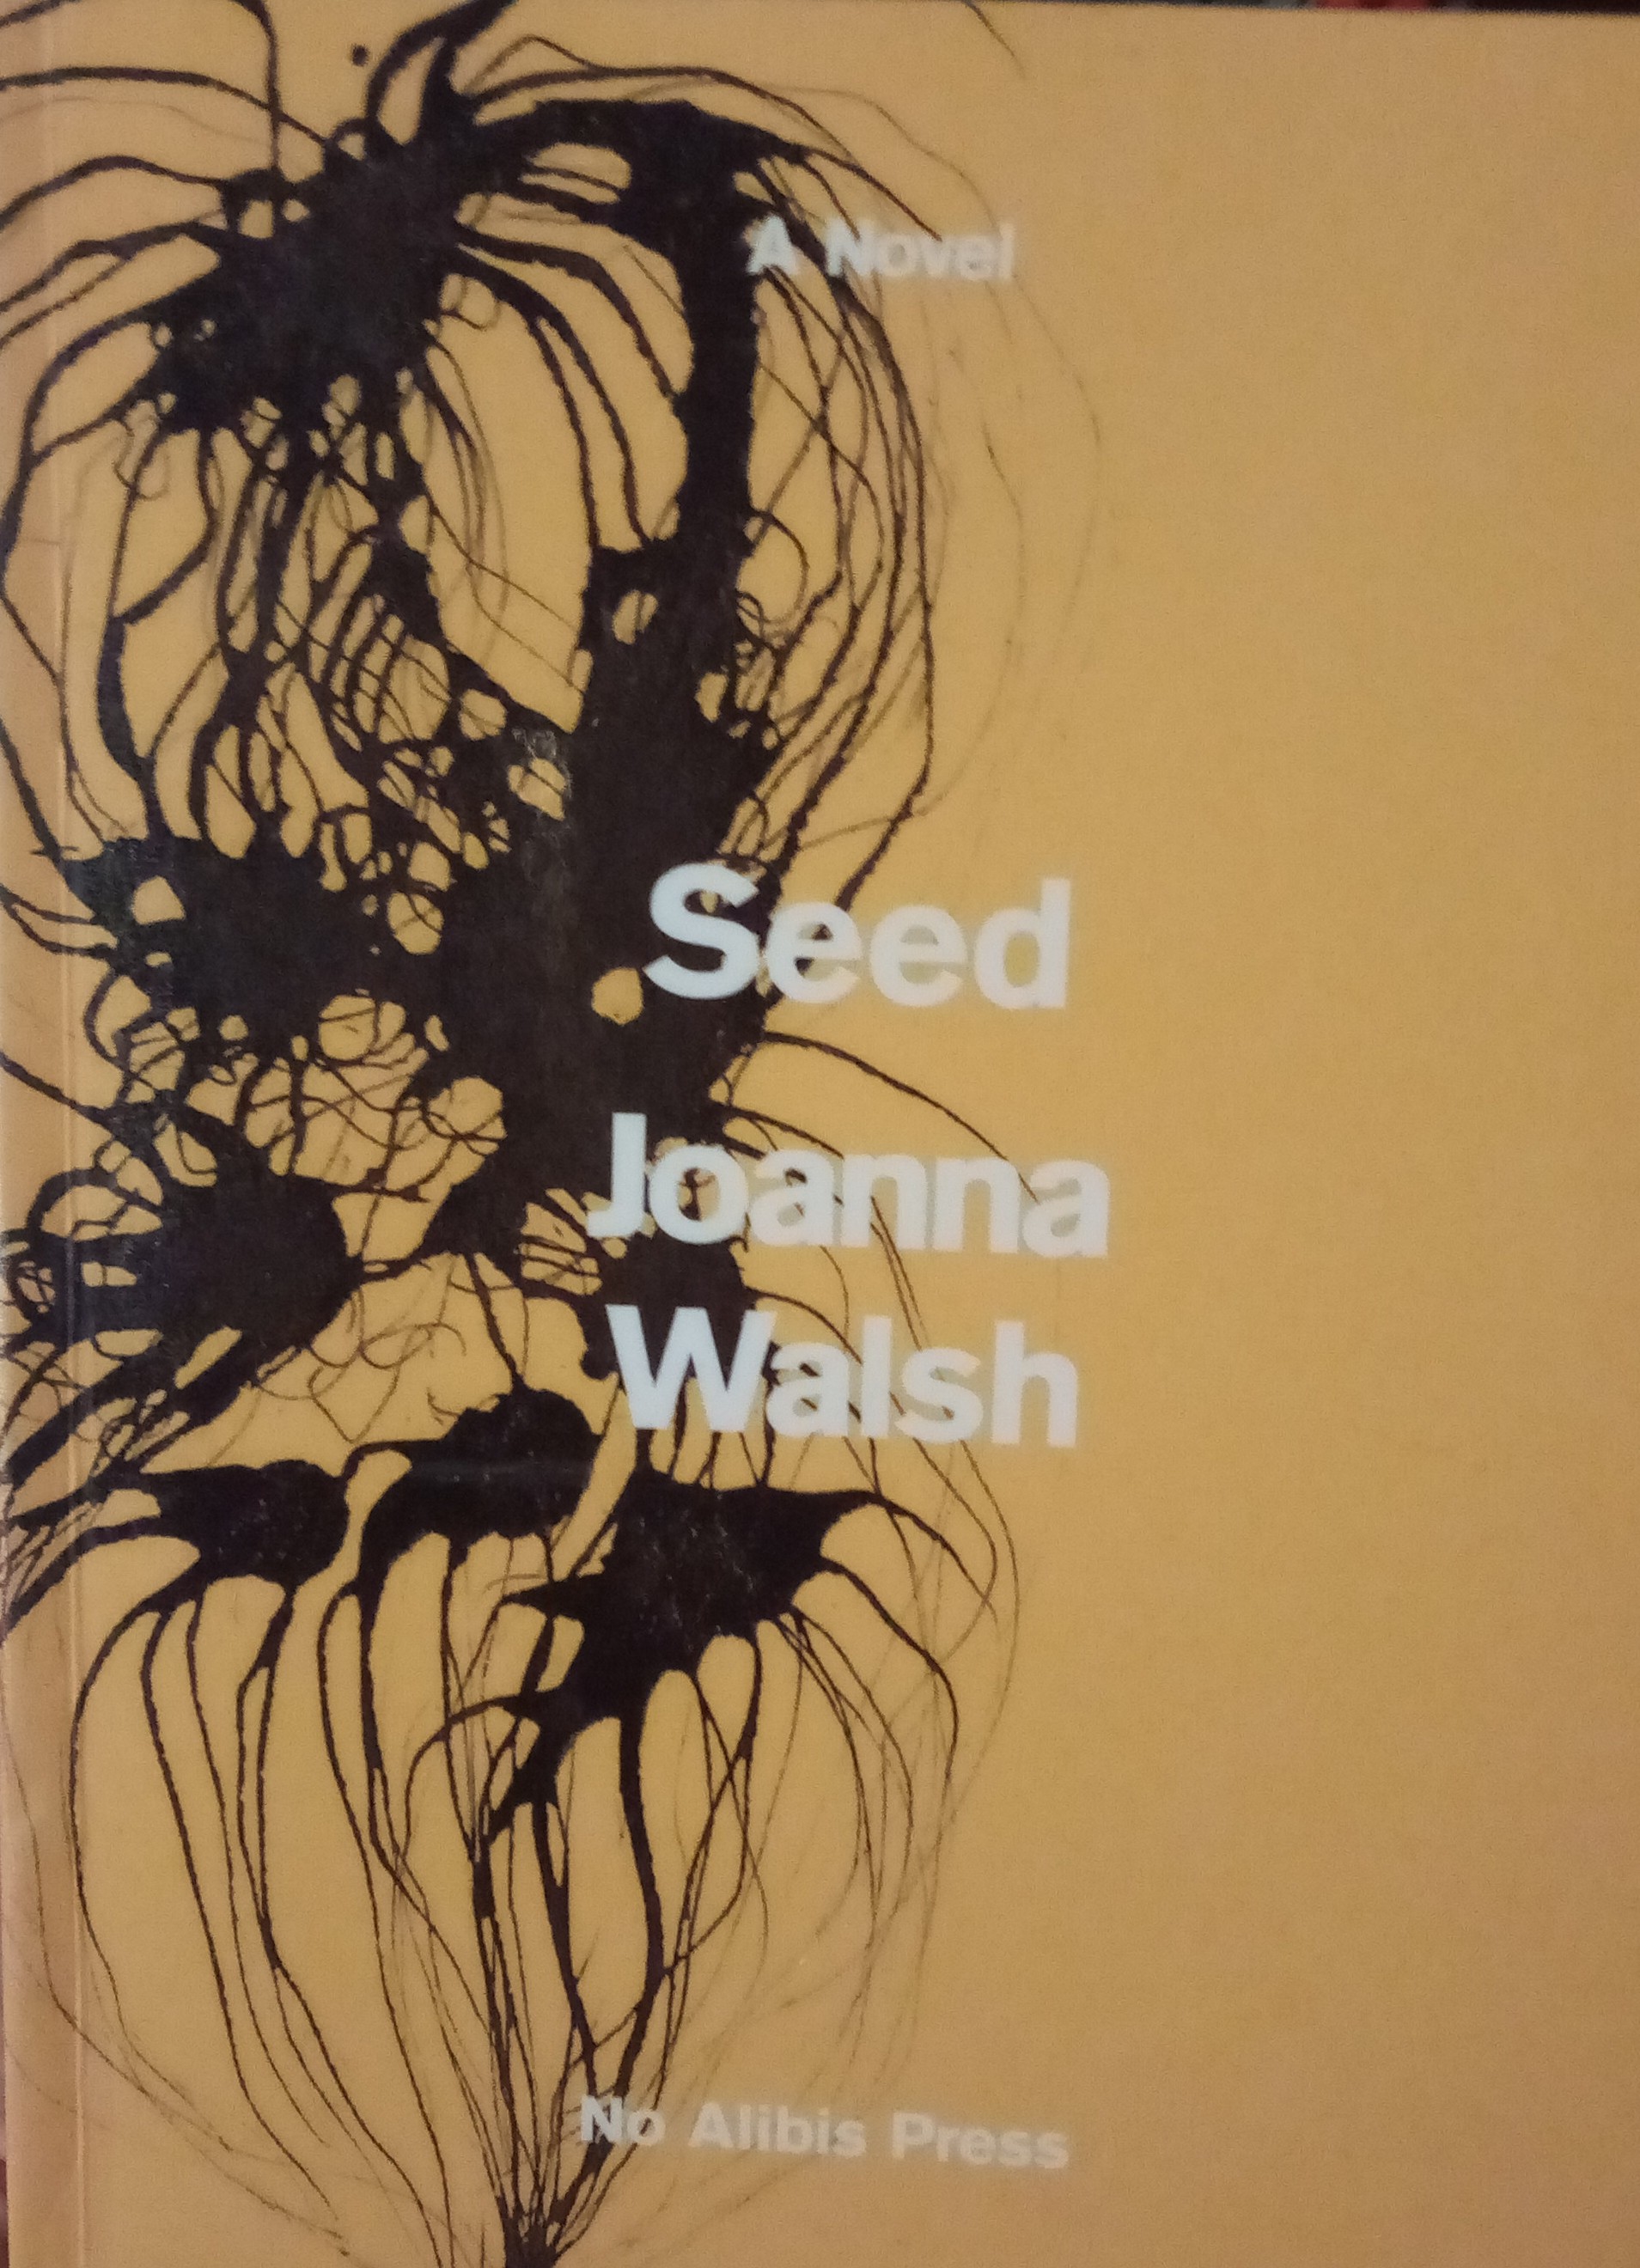 Joanna Walsh: Seed (Paperback, 2021, No Alibis Press)